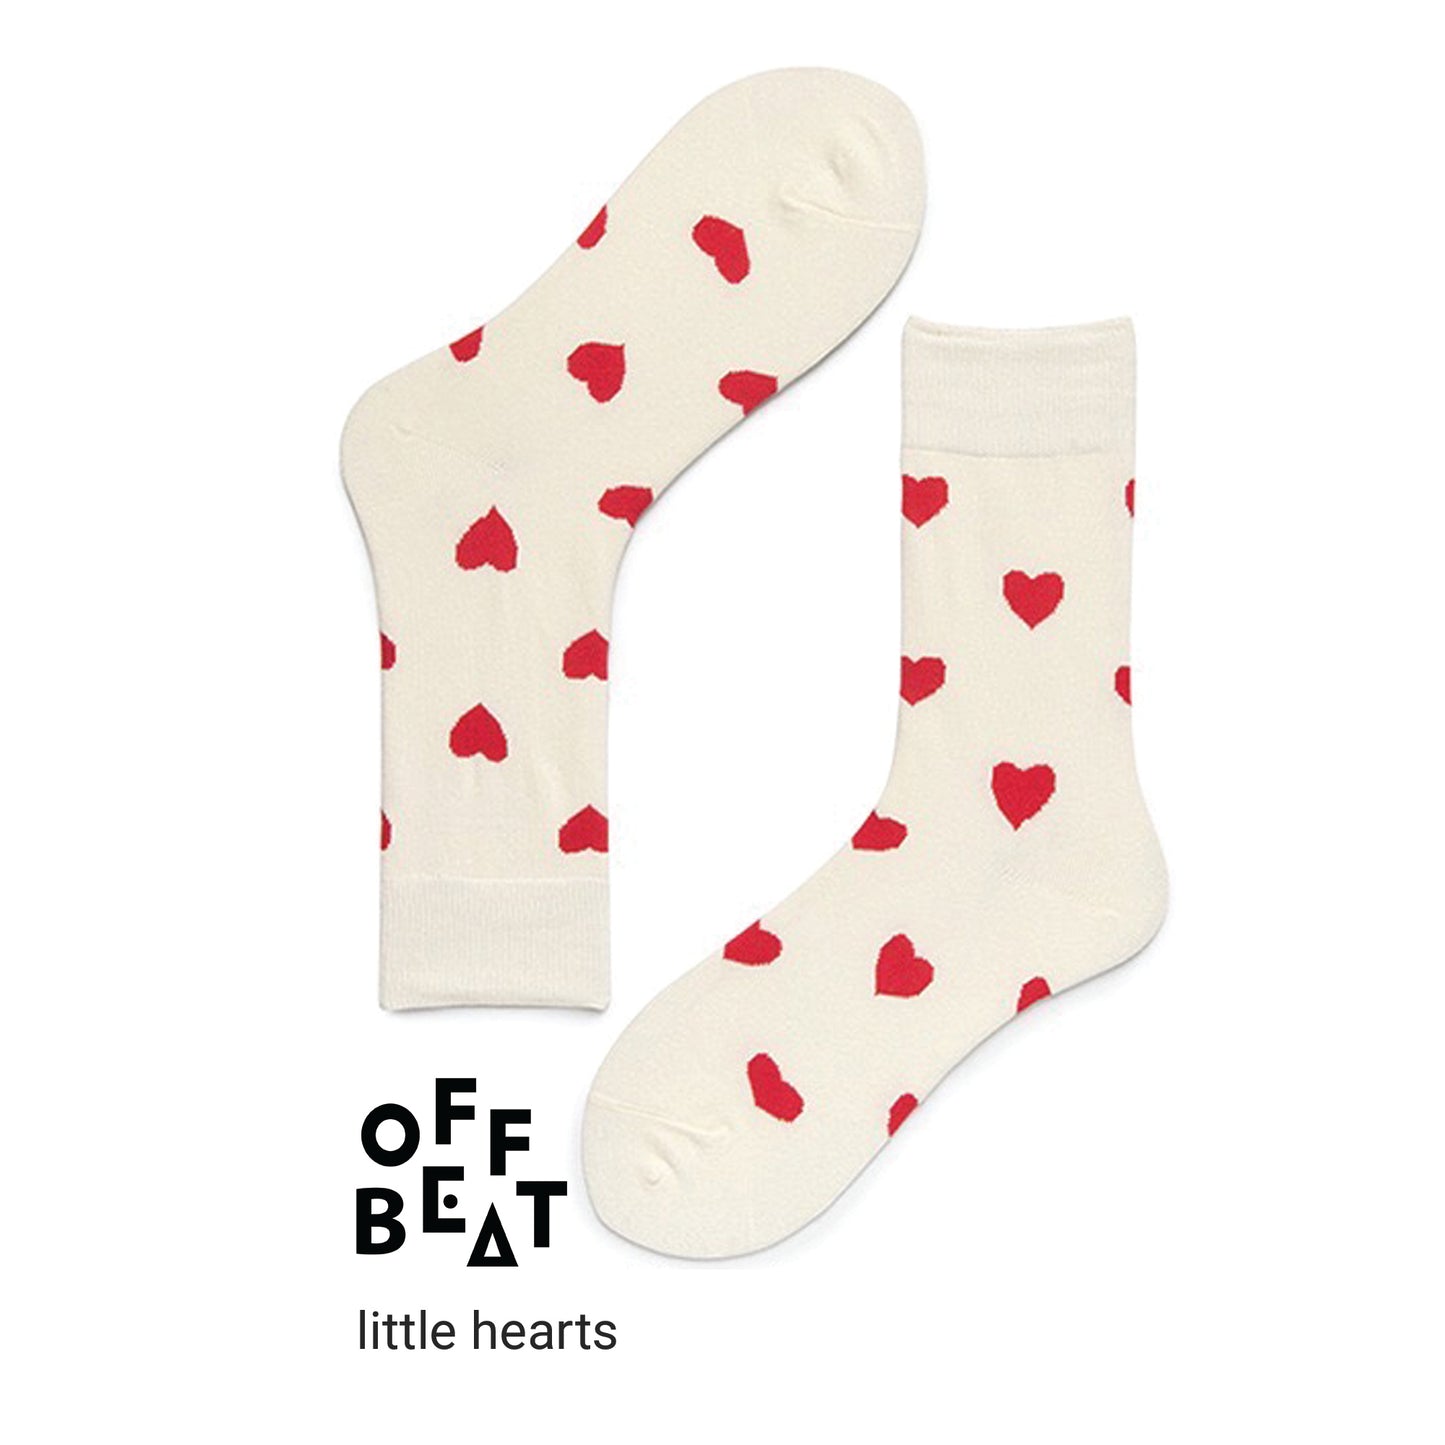 Little red heart socks